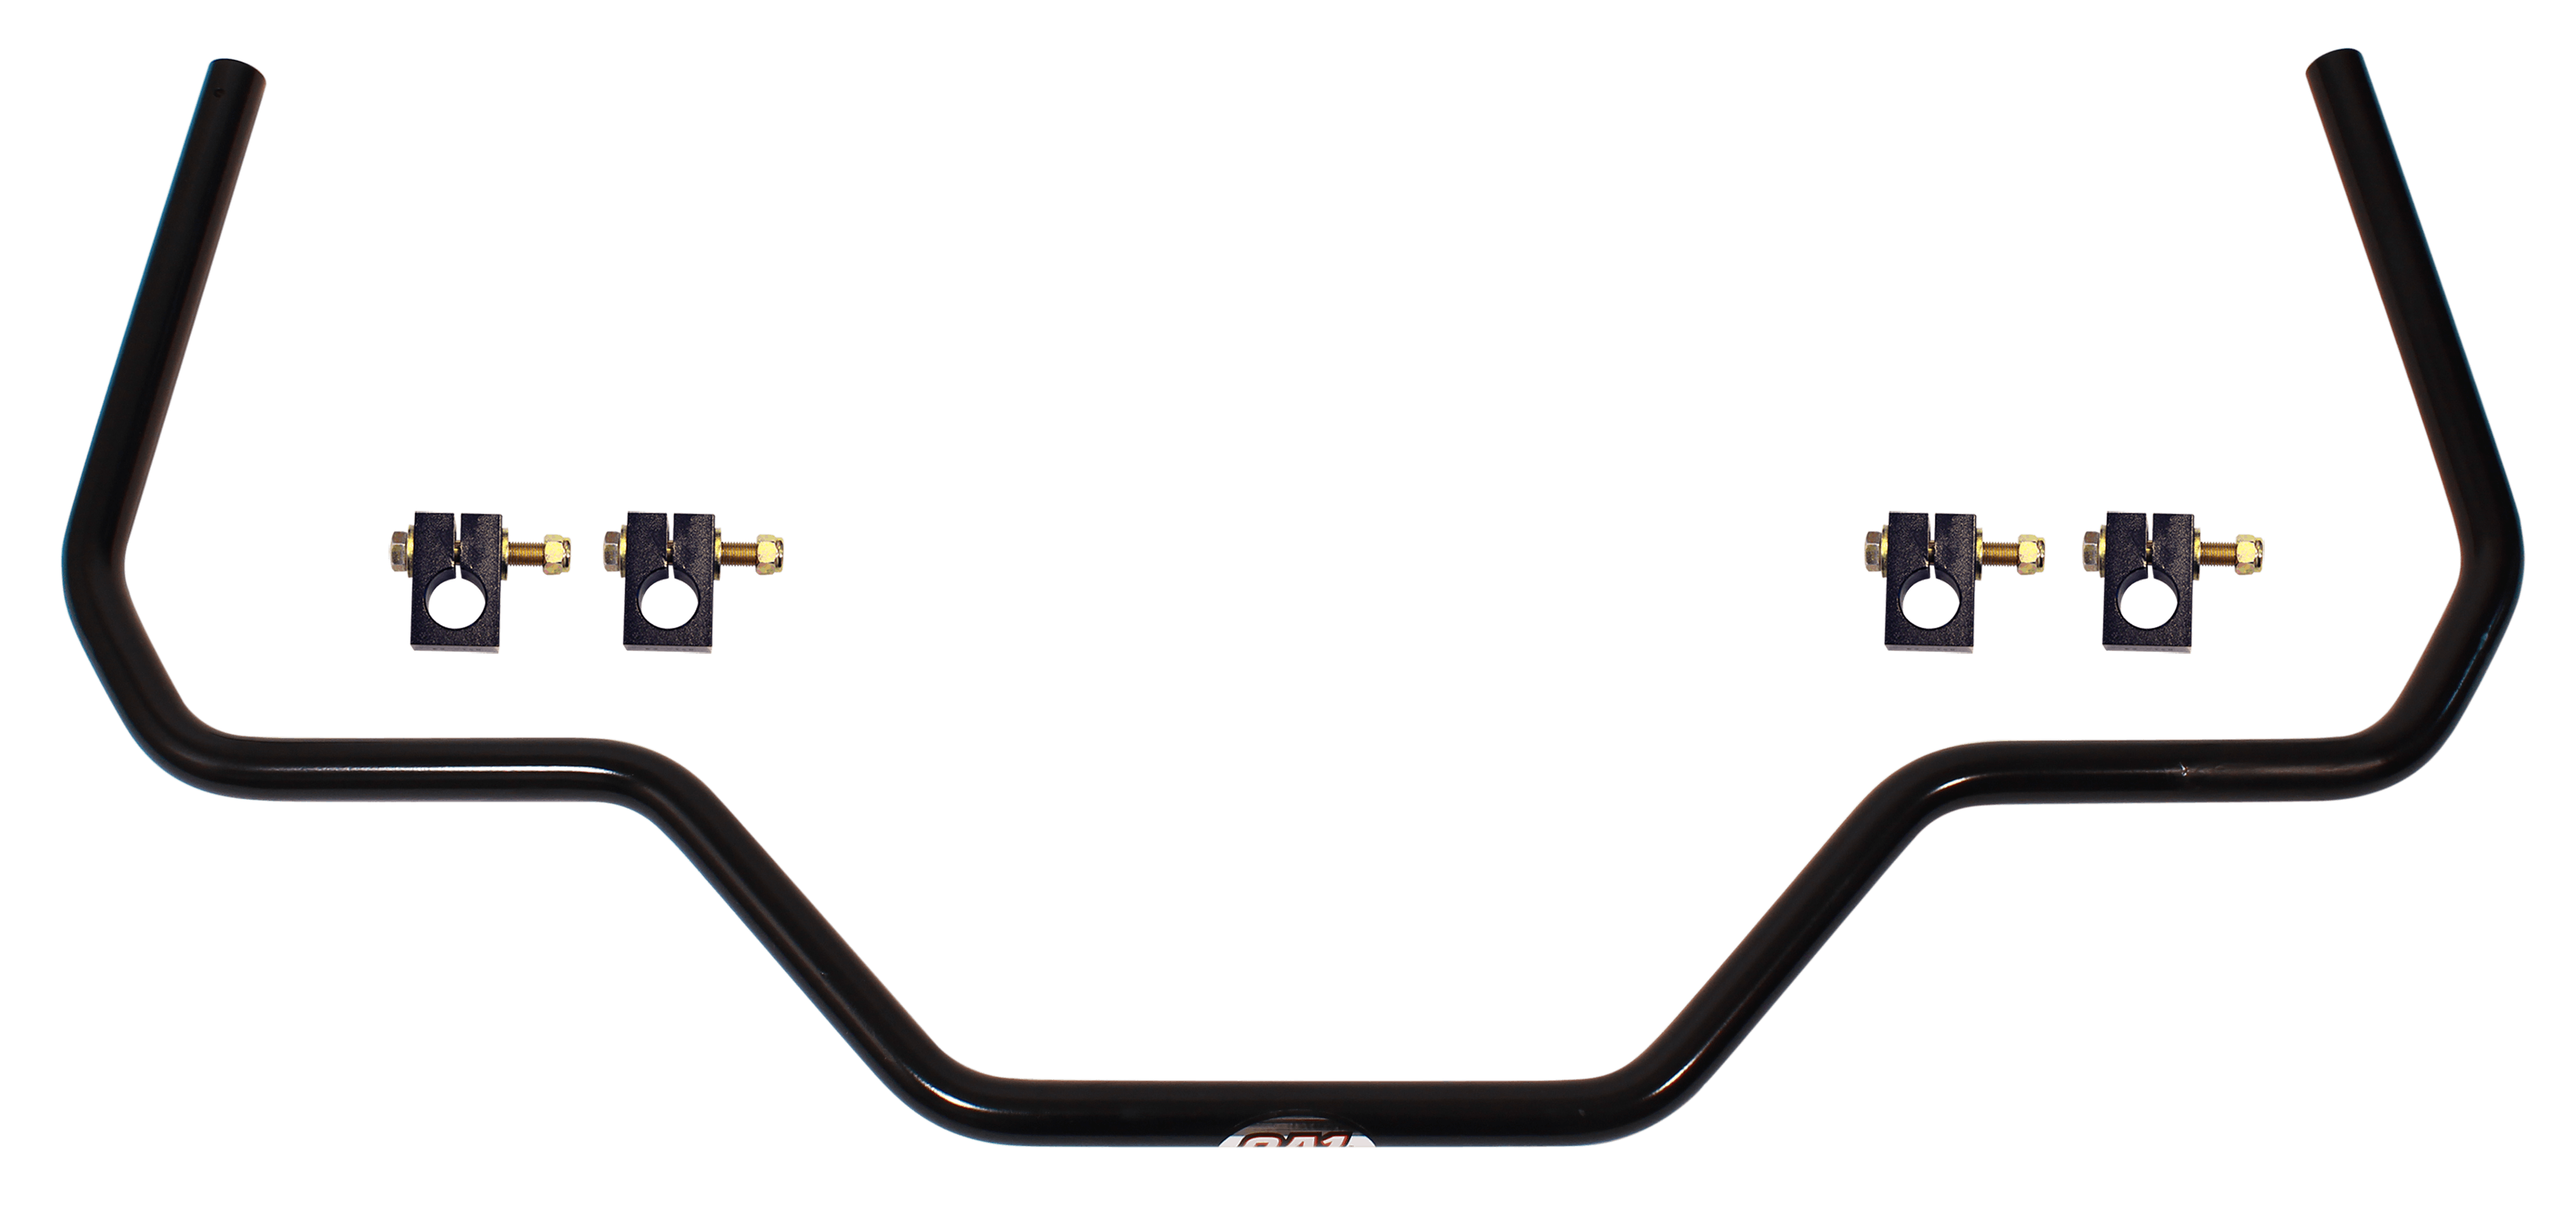 QA1 52871 Sway Bar Kit, Rear 1 inch 64-72 Gm A Body